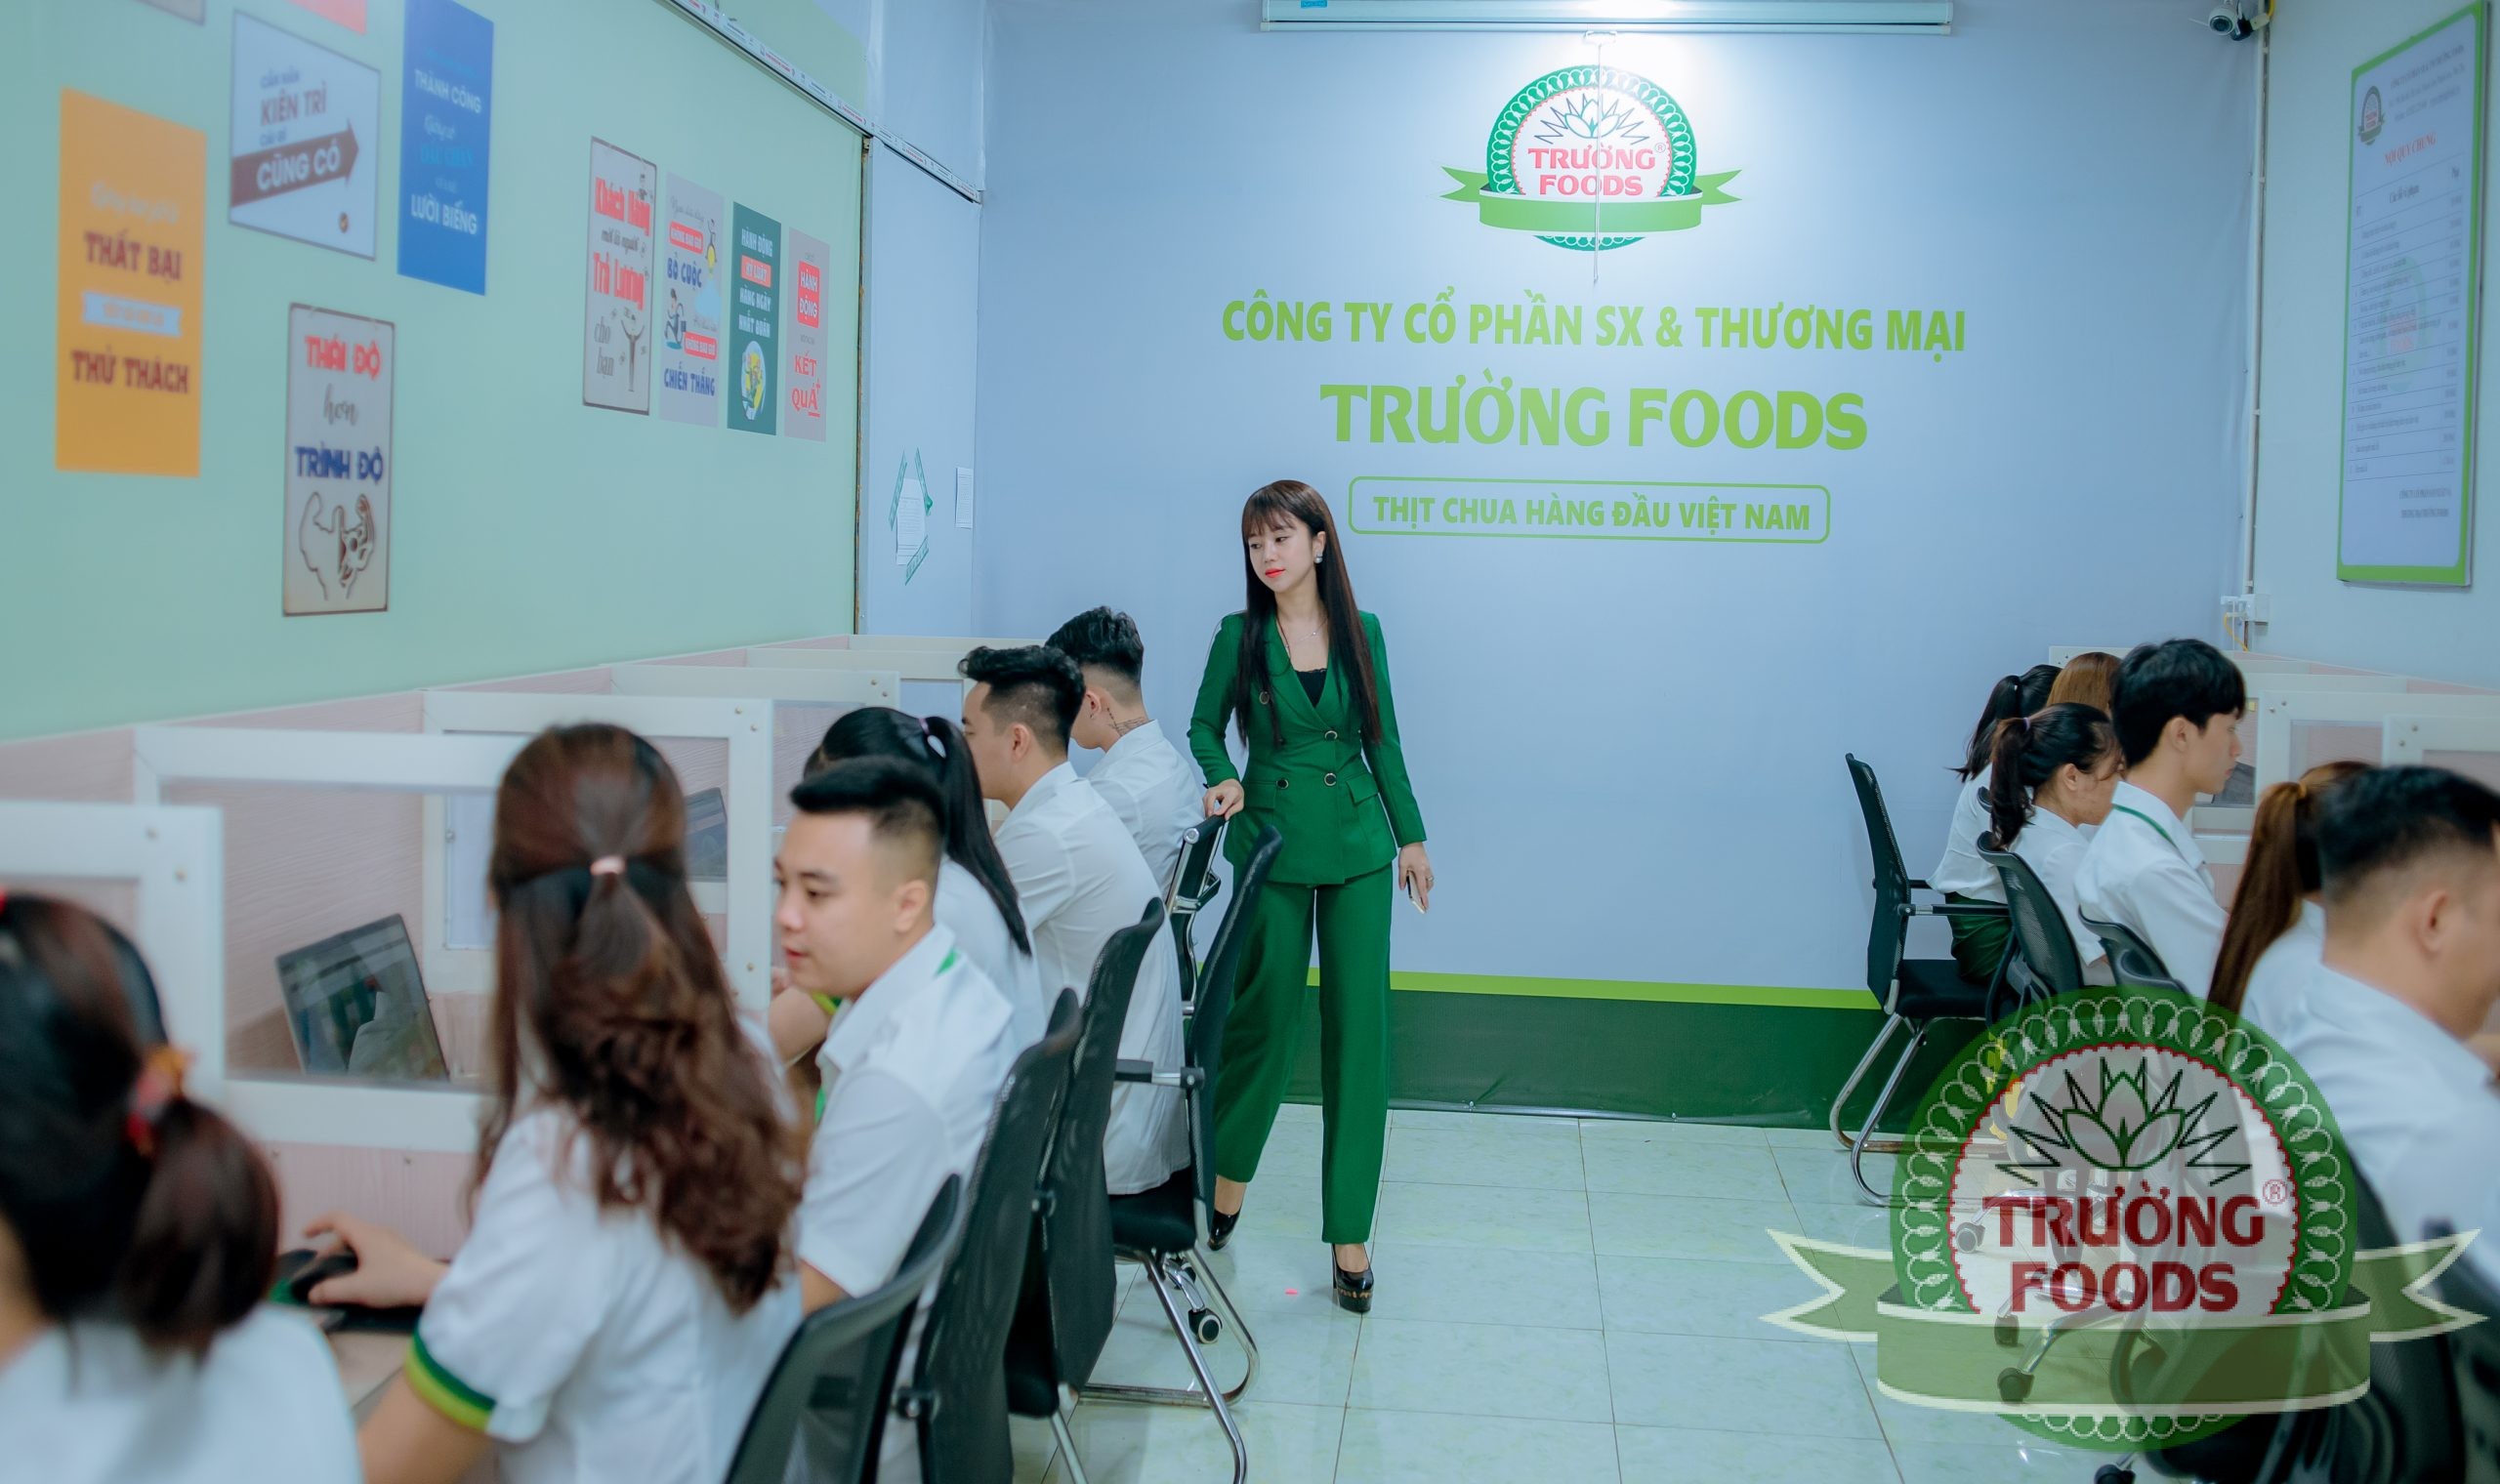 Trường Foods chú trọng đào đào tạo đội ngũ nhân viên.